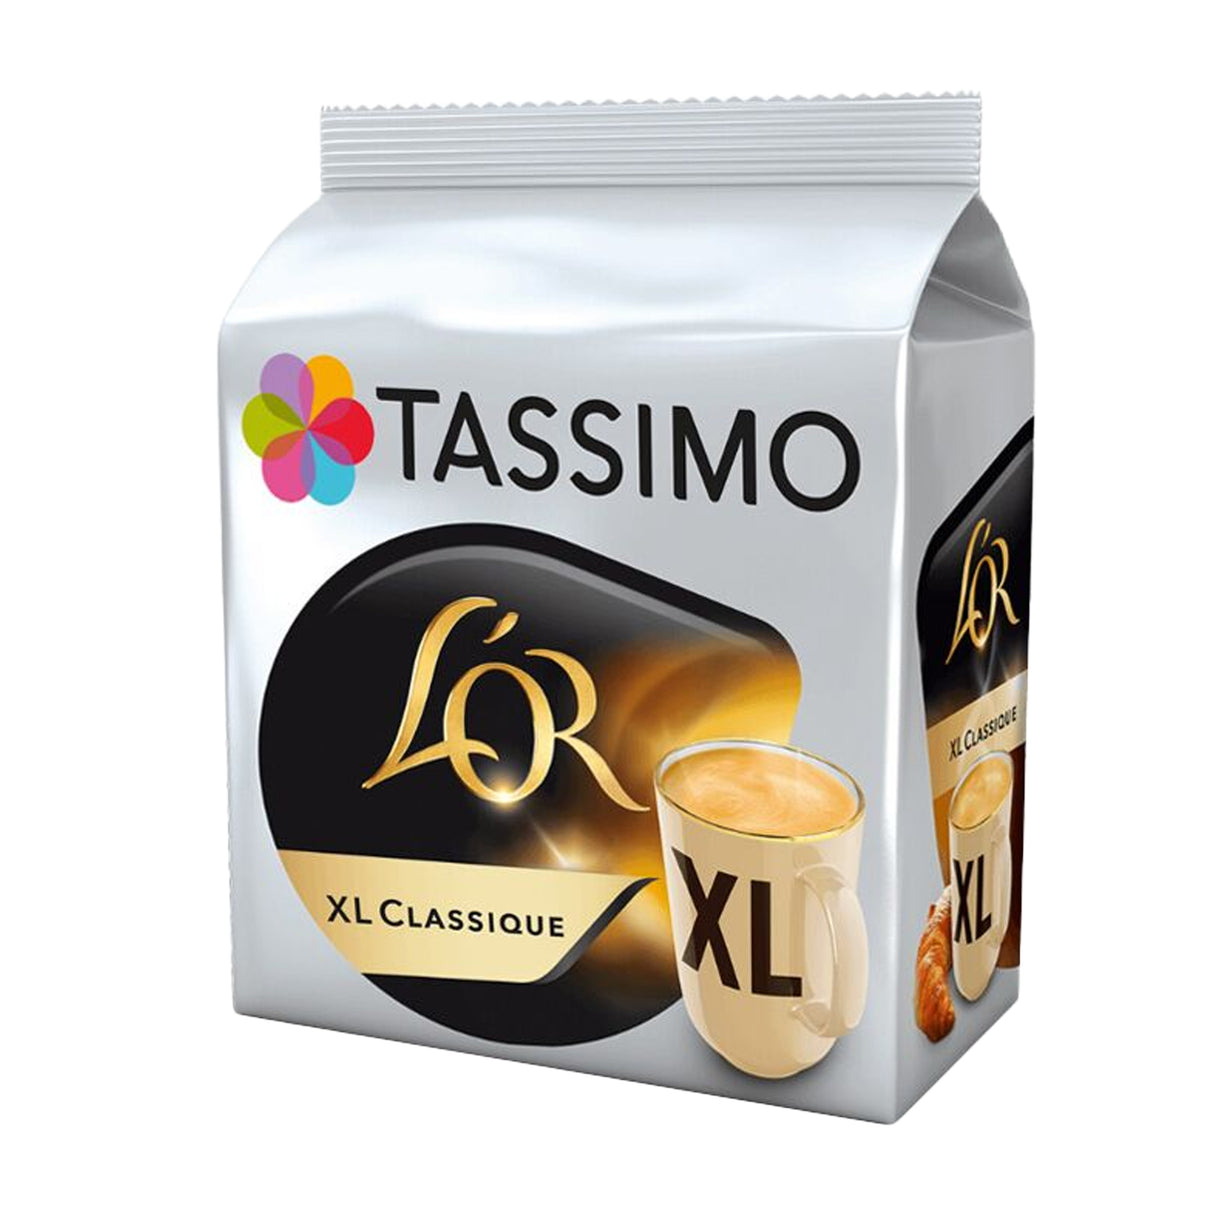 Tassimo L'OR XL Classique Coffee Pods Case